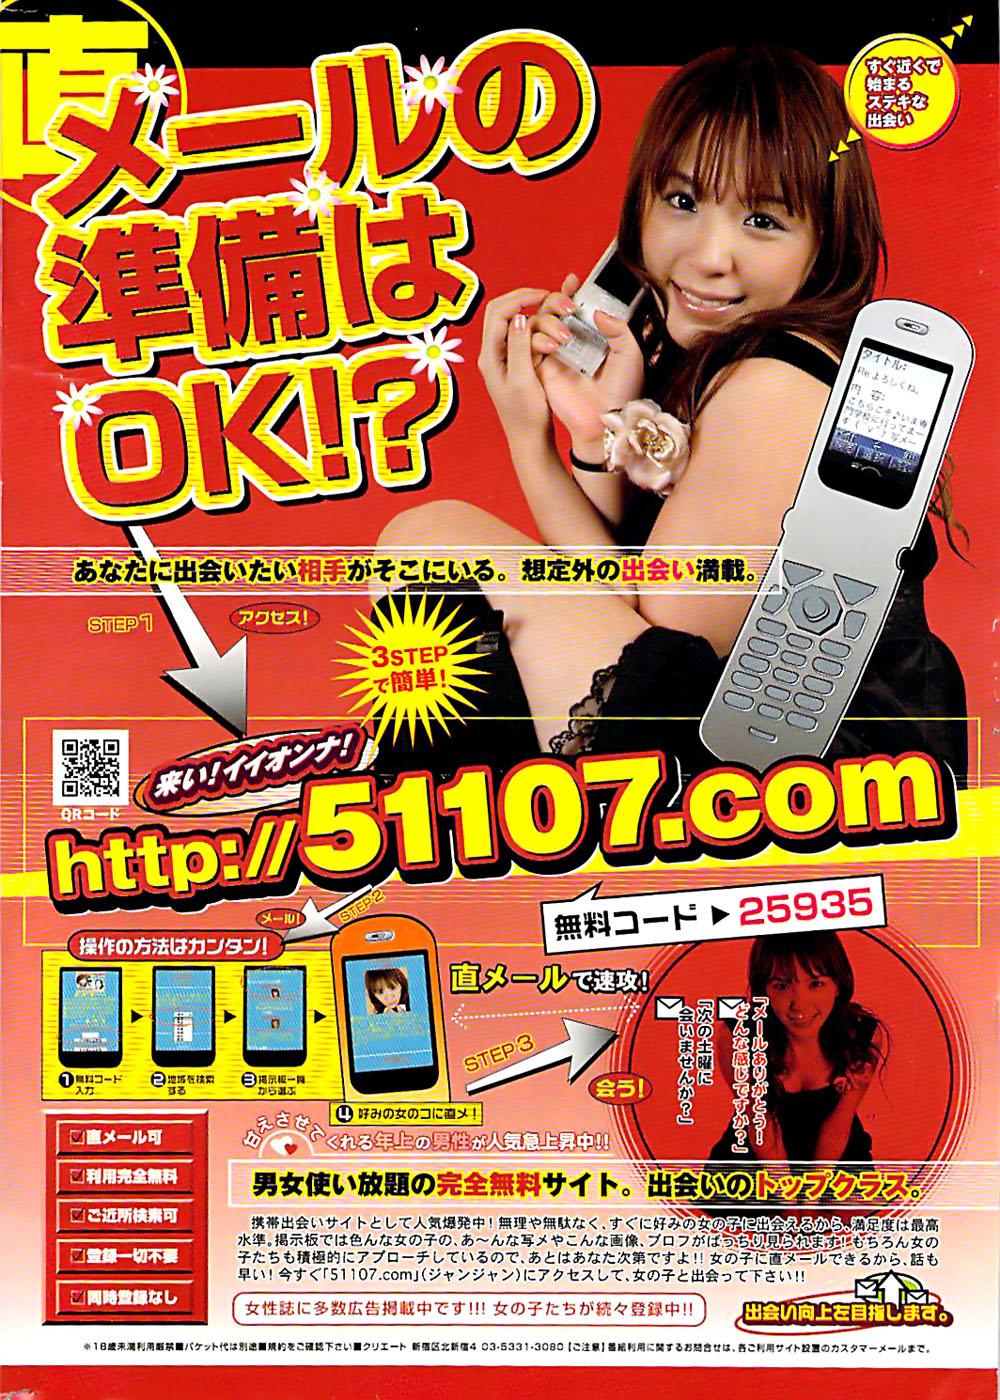 Doki! Special 2006-04 261